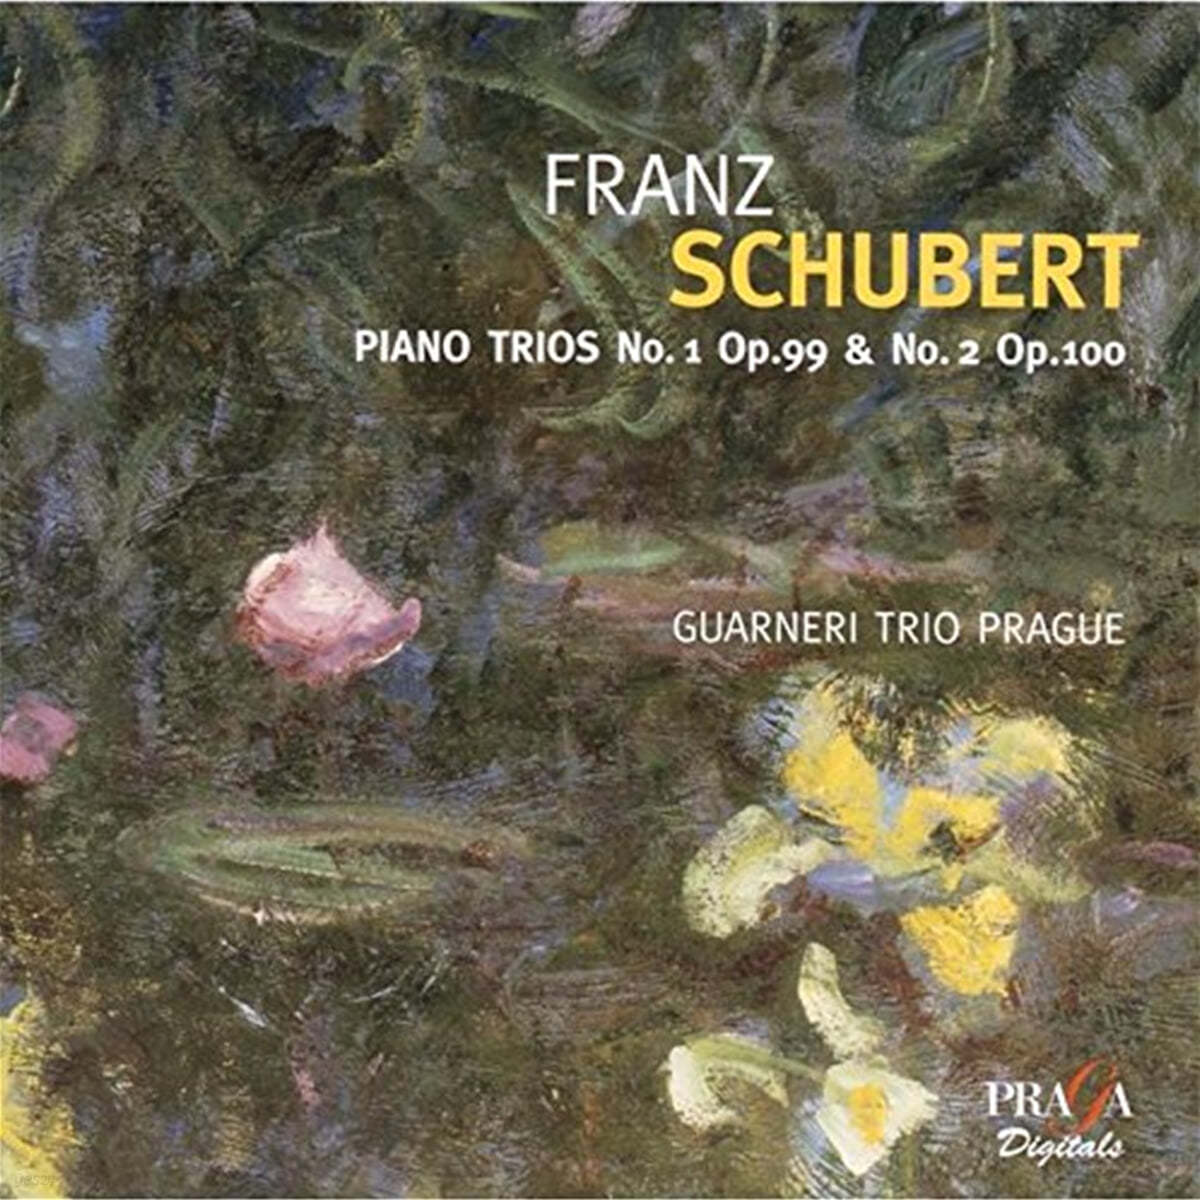 Guarneri Trio Prag 슈베르트: 피아노 삼중주 (Schubert : Piano Trios D898, D929) 